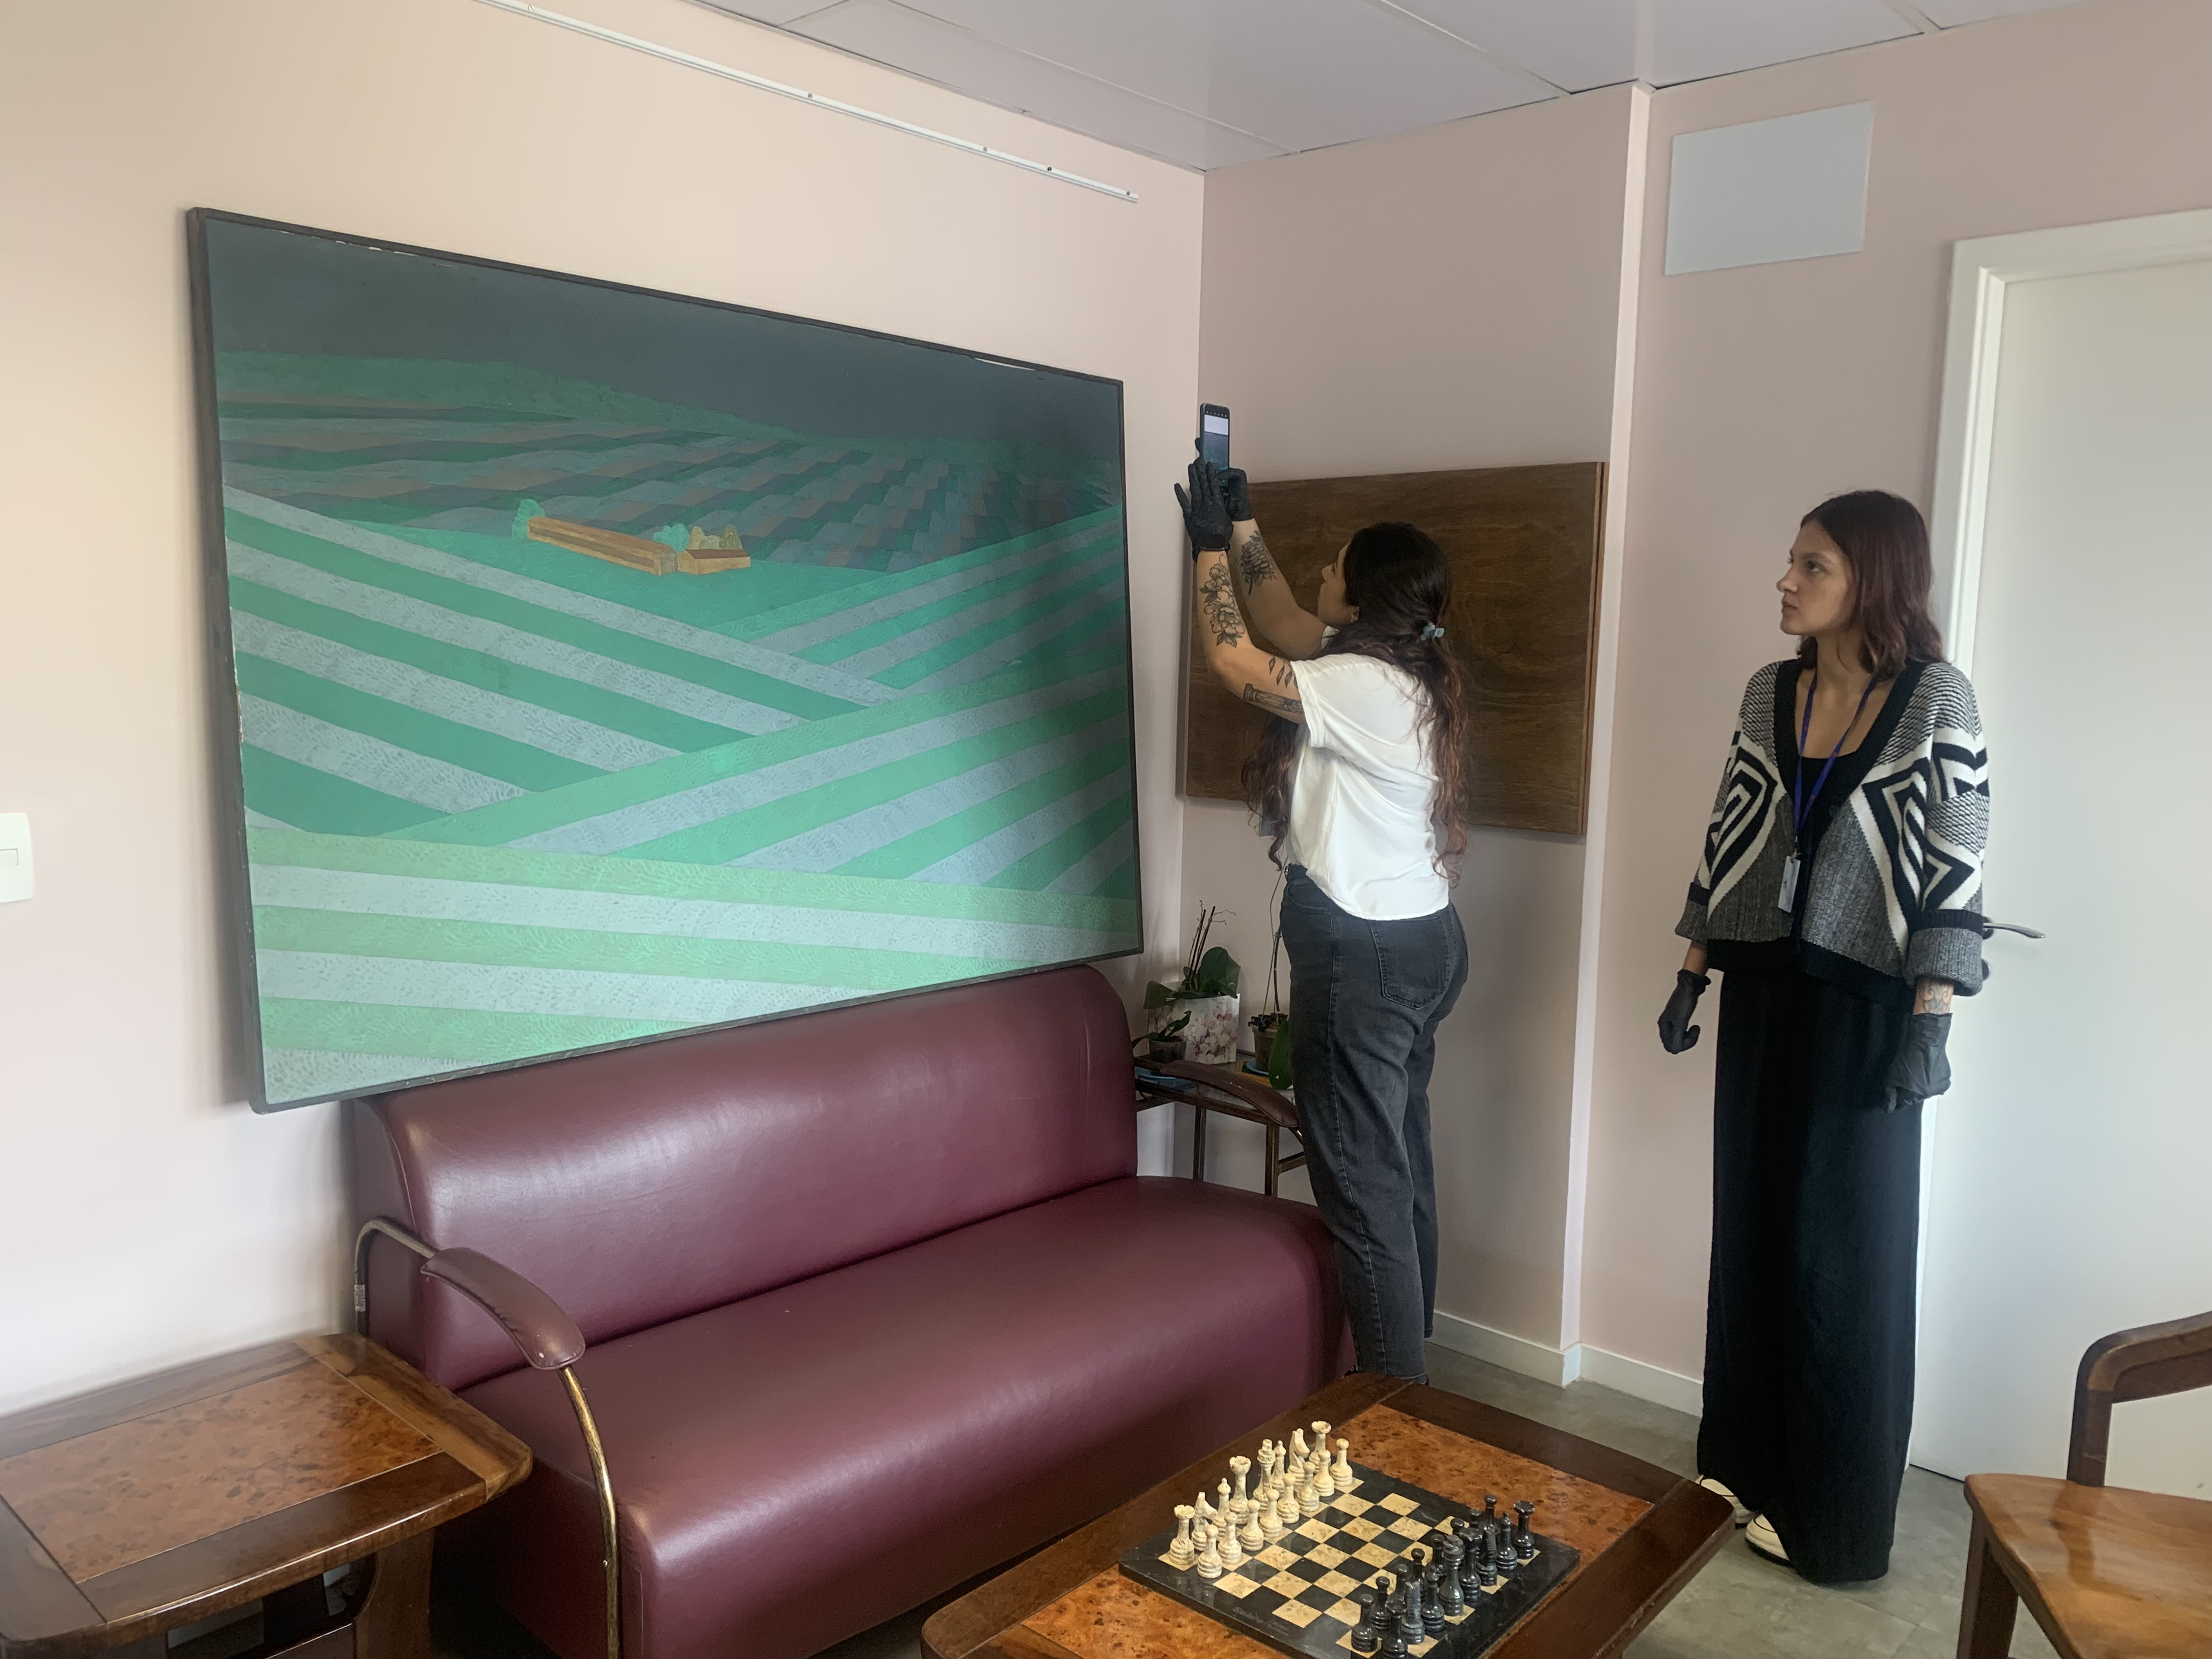 Fotografia na sala da Superintendência do HSPM. Aparecem duas profissionais conservadoras olhando e analisando uma das cinco obras de arte. Uma delas utiliza um celular para fotografar o quadro.